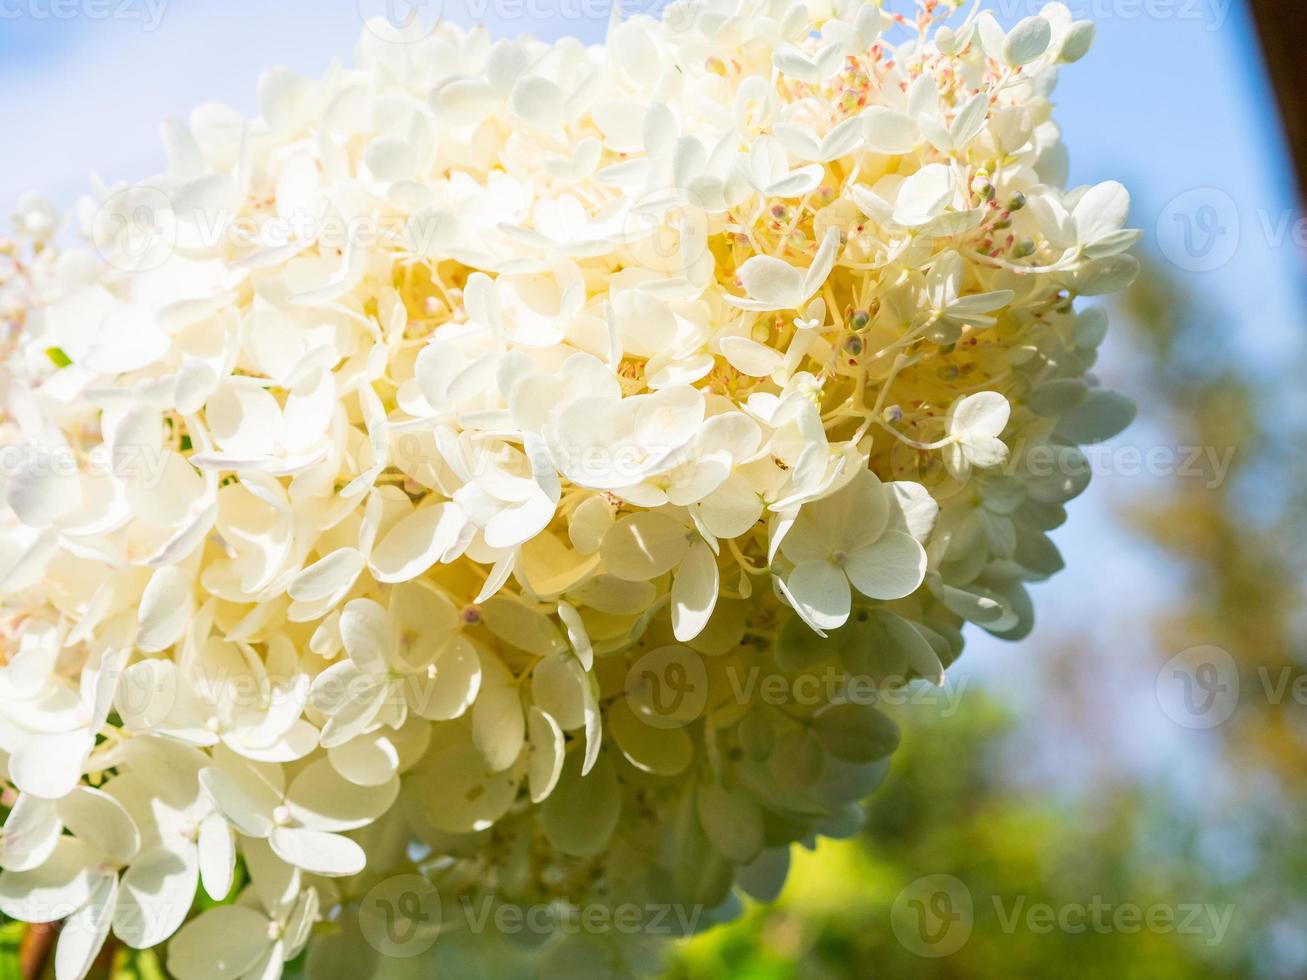 schöne blühende weiße große Hortensie, floraler Hintergrund foto